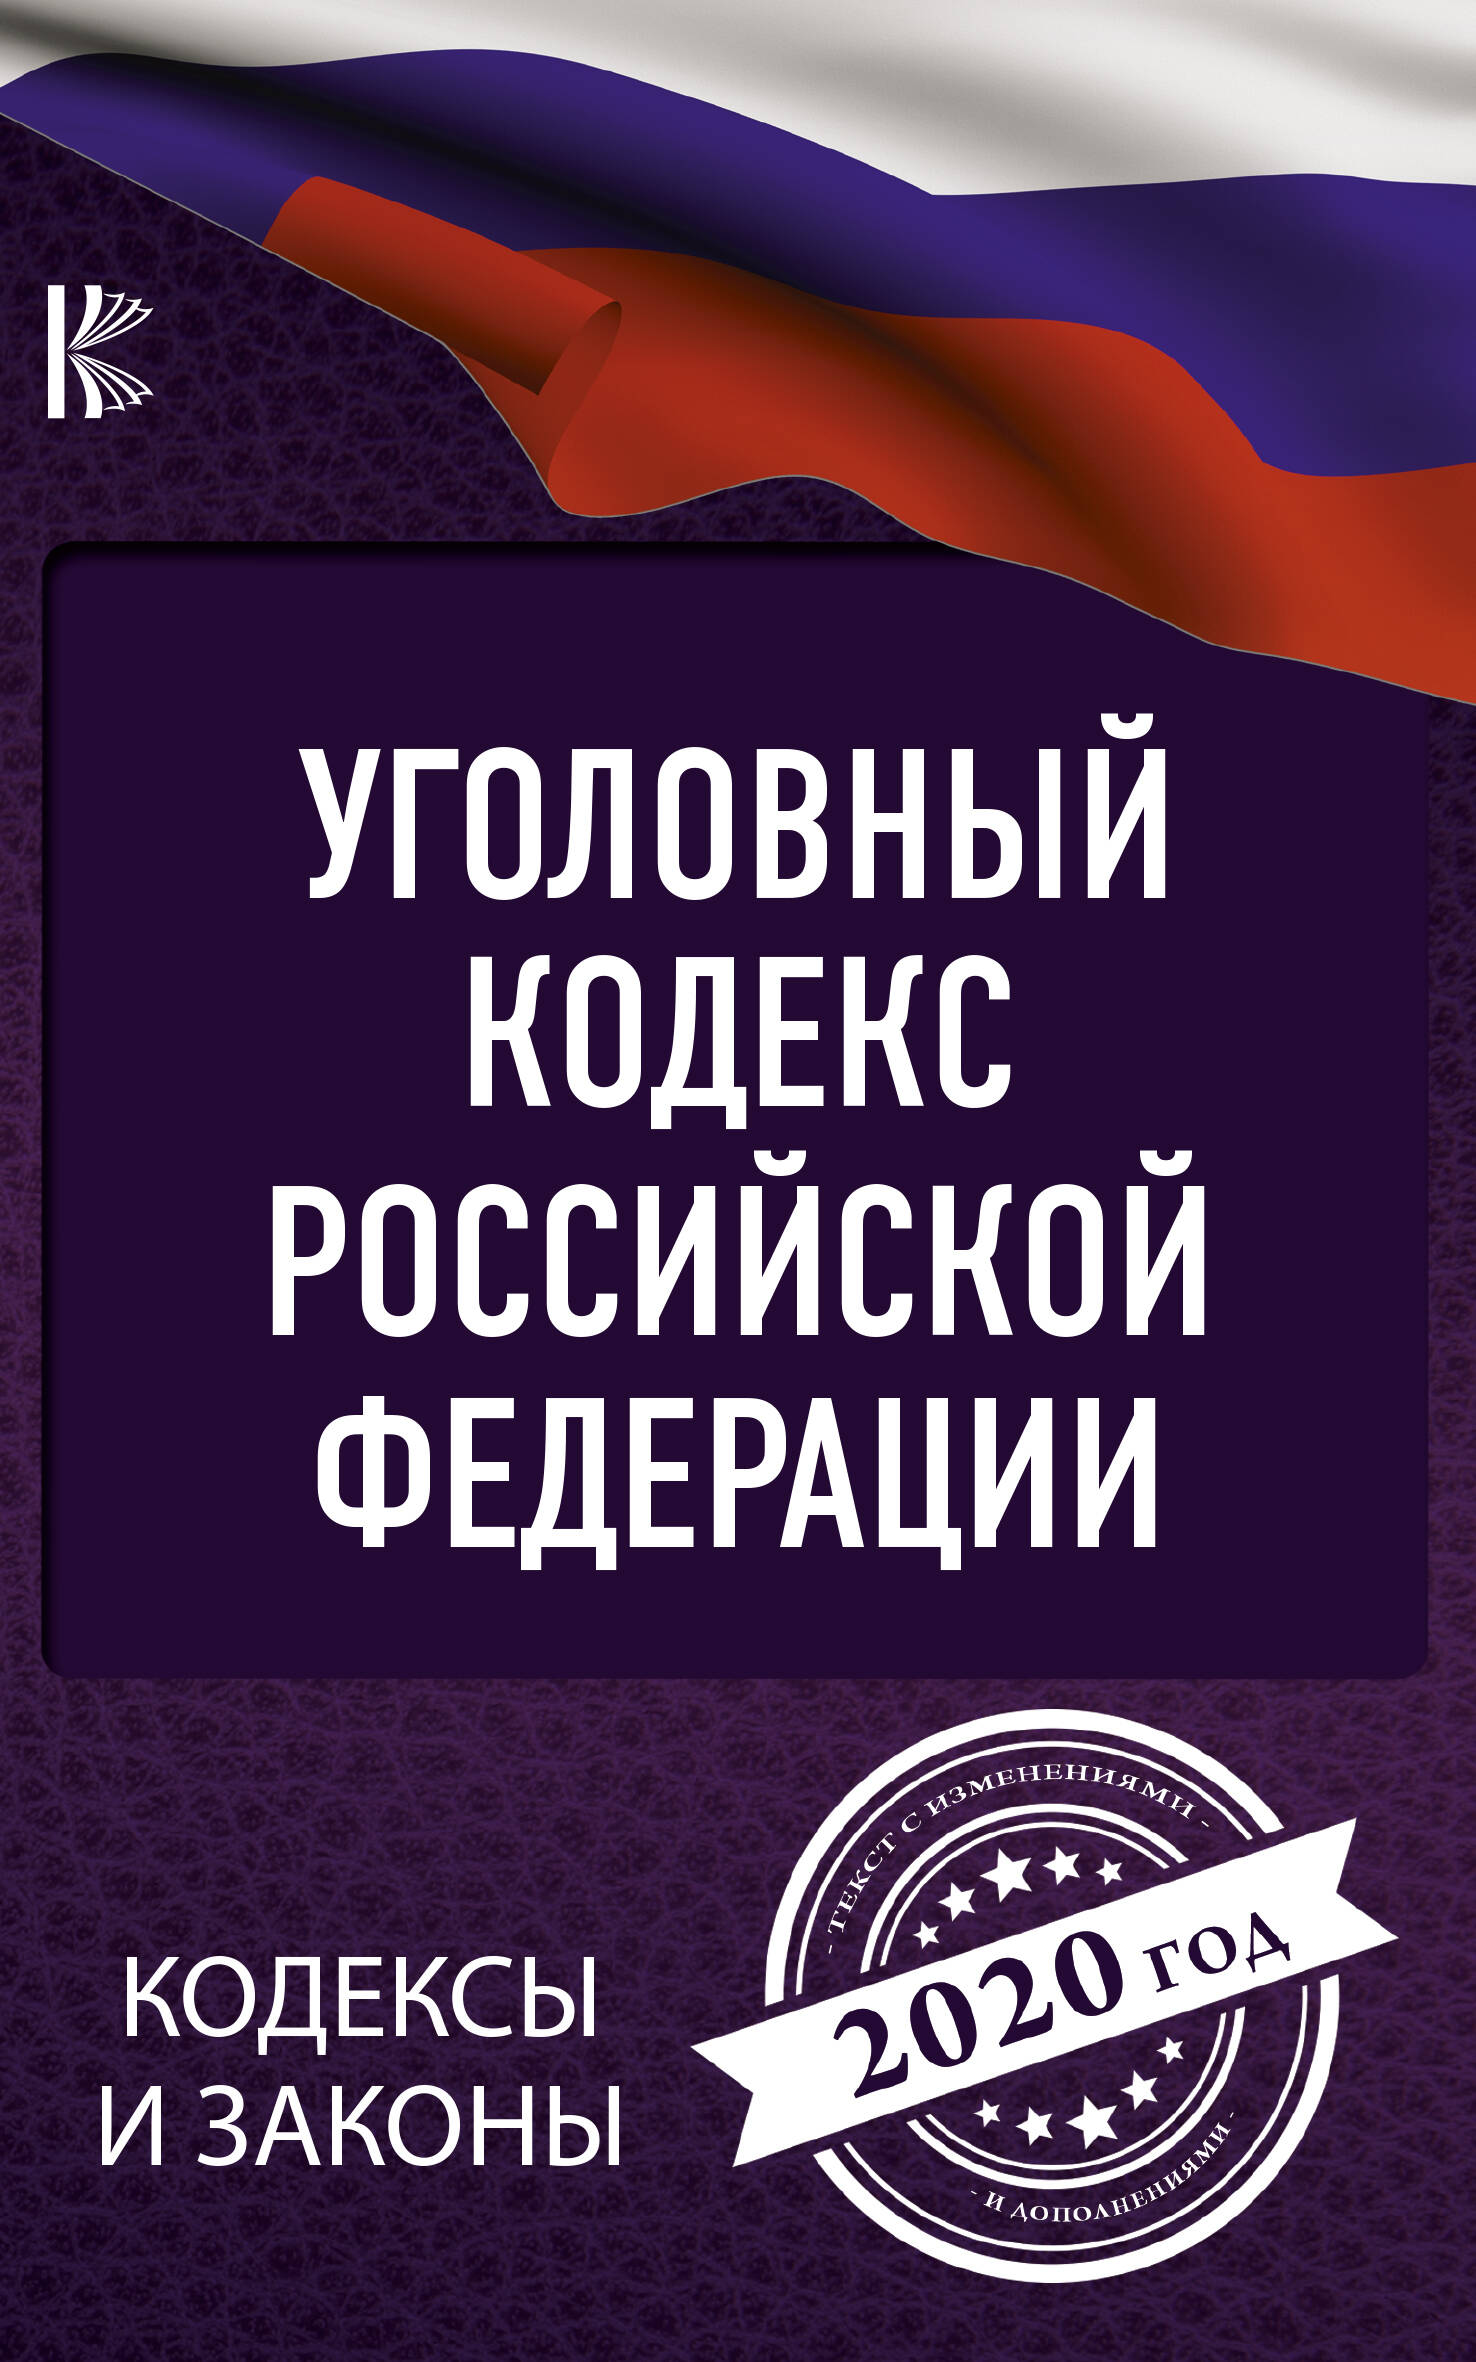  Уголовный Кодекс Российской Федерации на 2020 год - страница 0